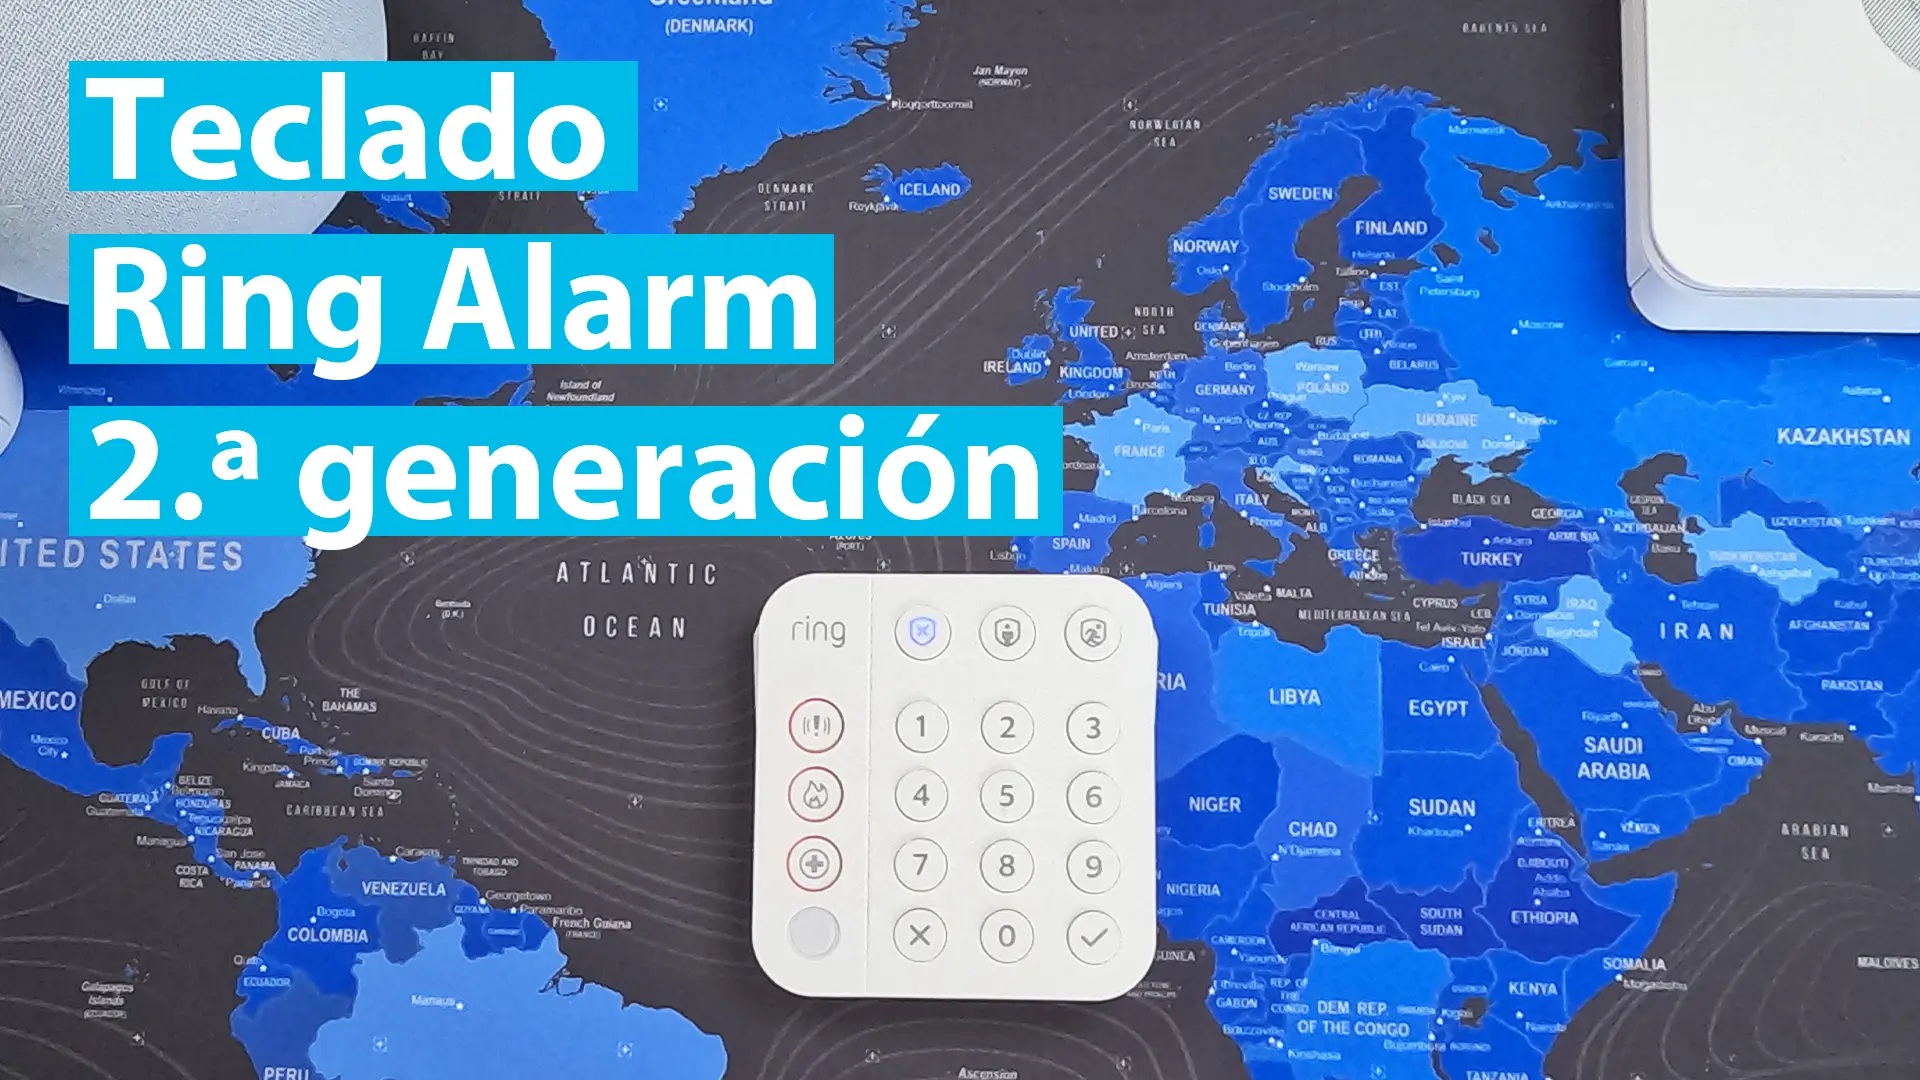 Teclado Ring Alarm (2.ª generación) Tu seguridad en el hogar